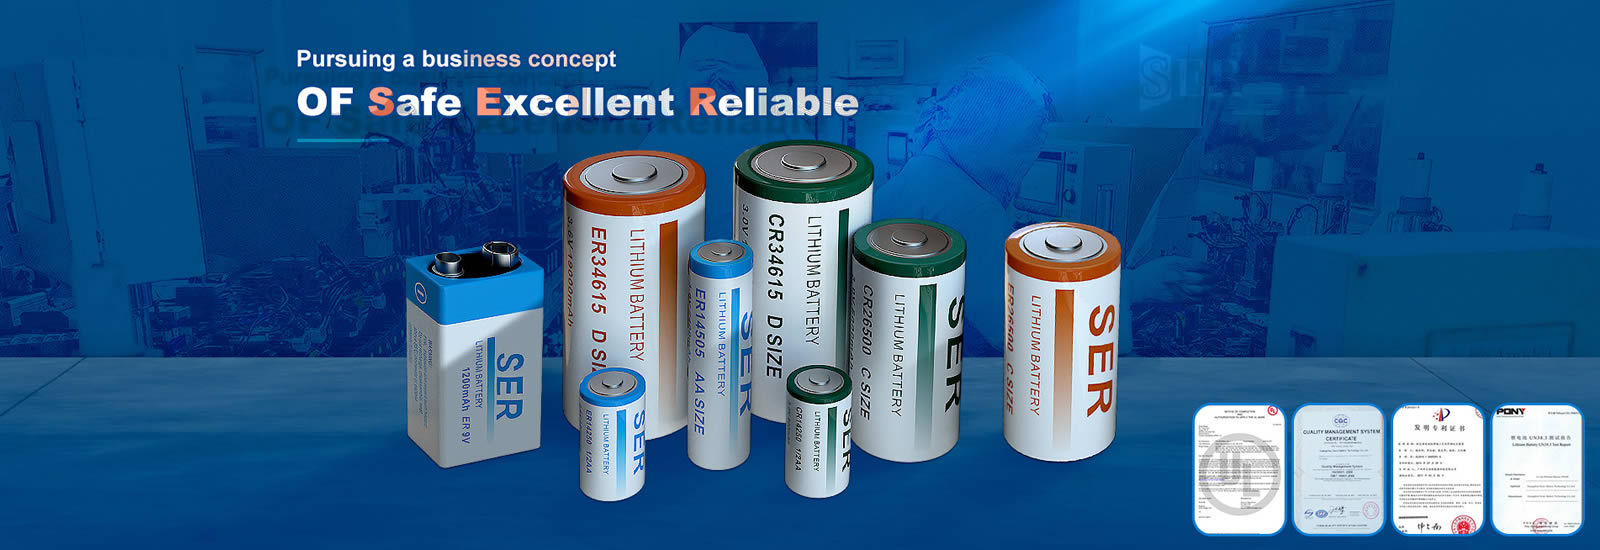 li socl2 battery supplier